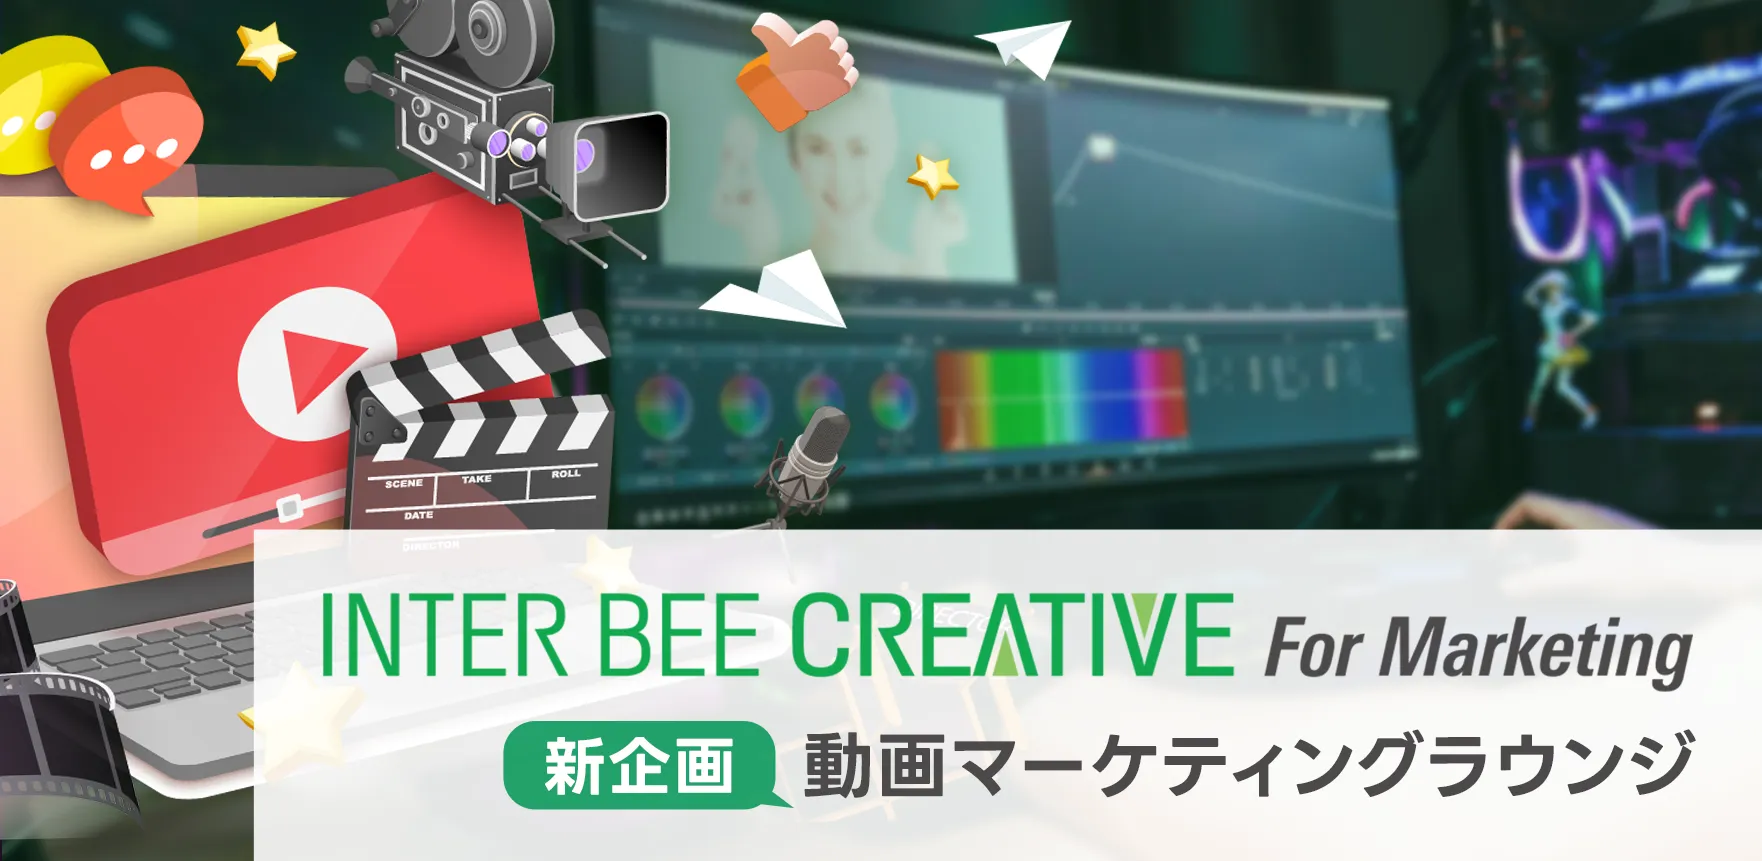 INTER BEE CREATIVE For Marketing 新企画 動画マーケティングラウンジ